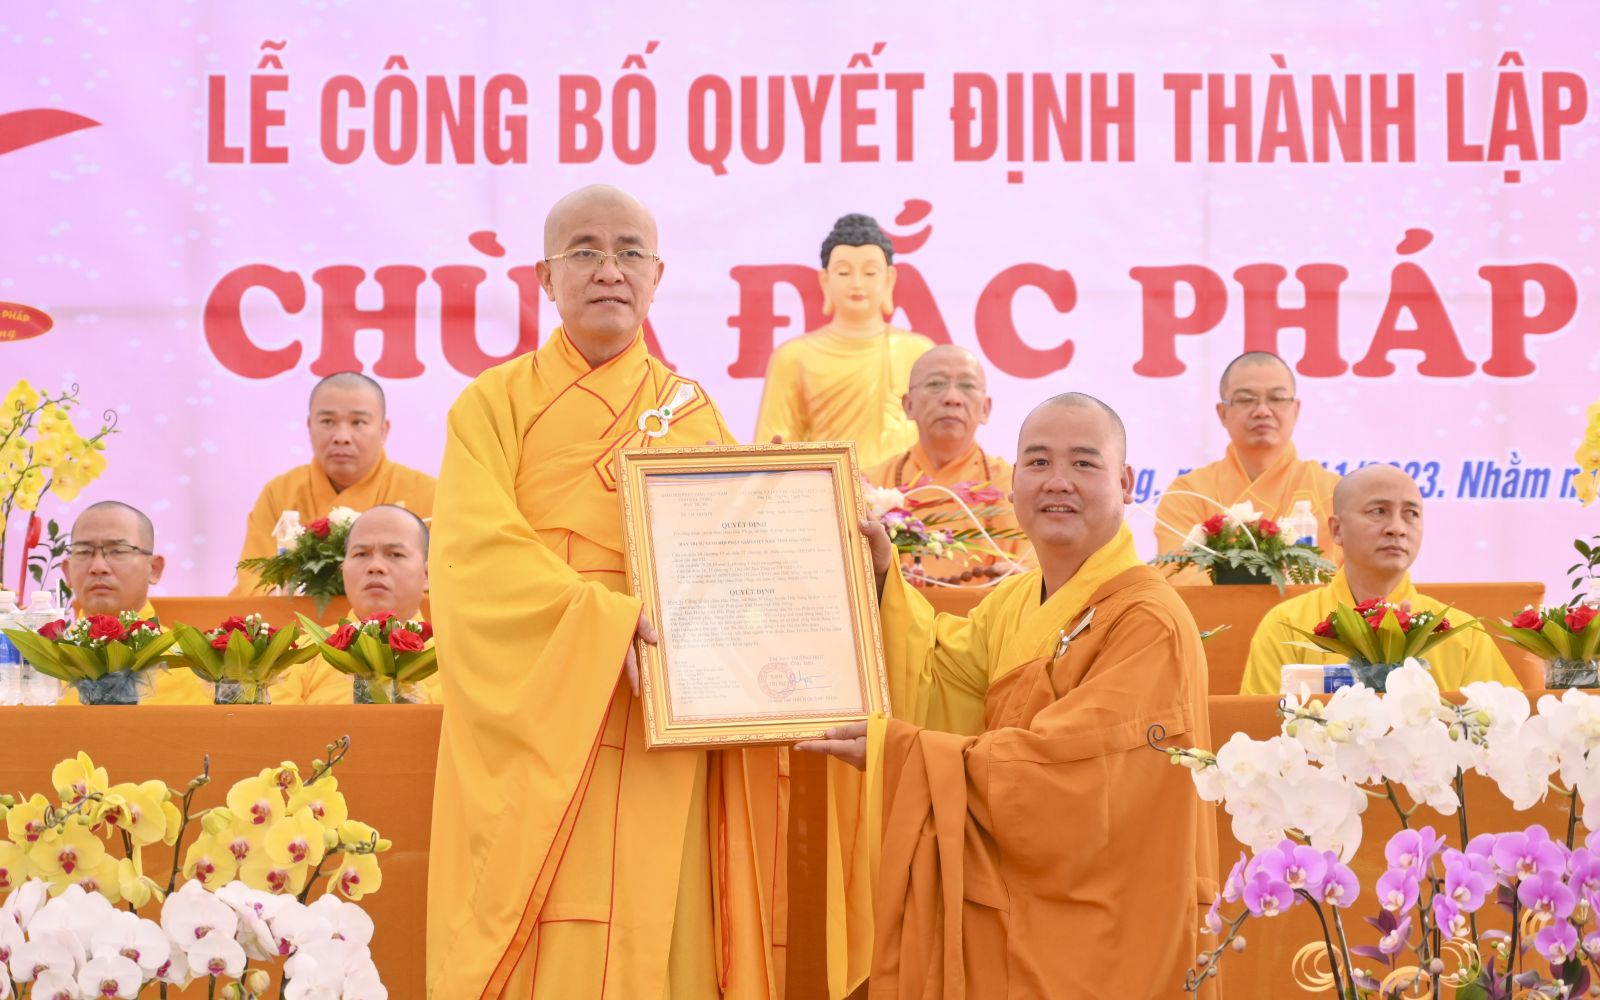 Lễ công bố Quyết định thành lập chùa Đắc Pháp xã Nâm N’Jang huyện Đắk Song